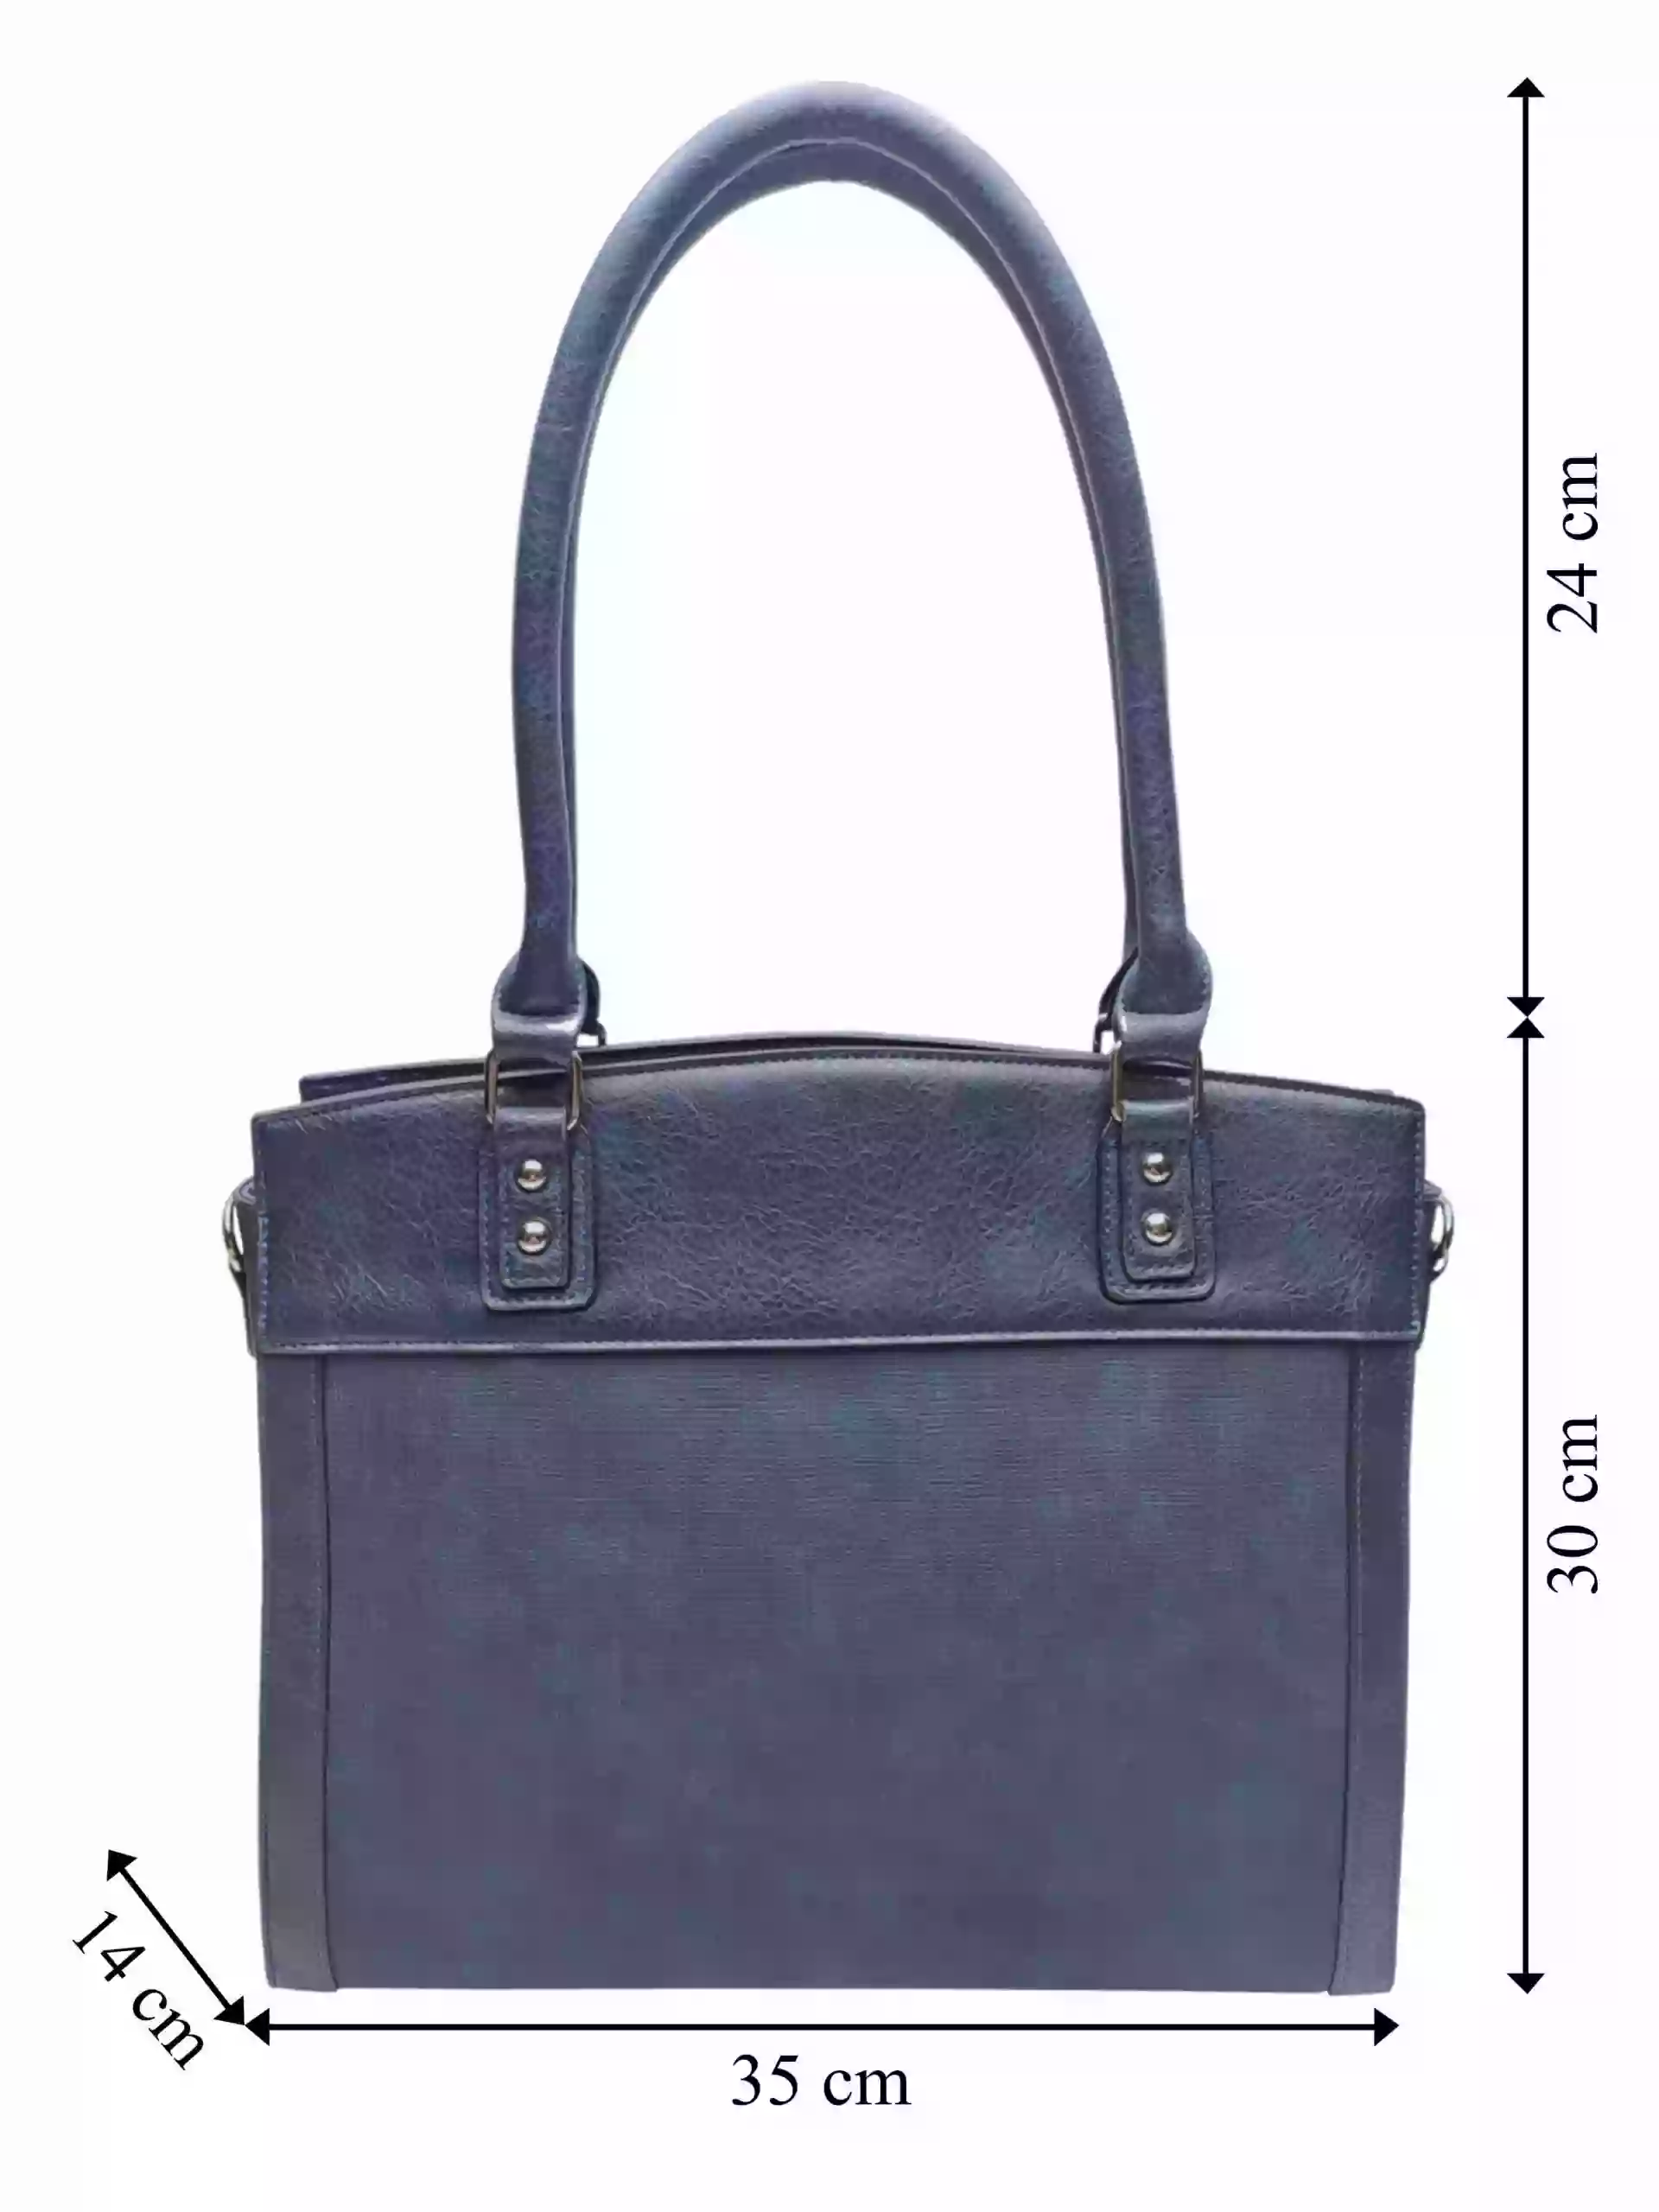 Stylová tmavě modrá kabelka do ruky i přes rameno, Tapple, H190028, přední strana kabelky do ruky s rozměry